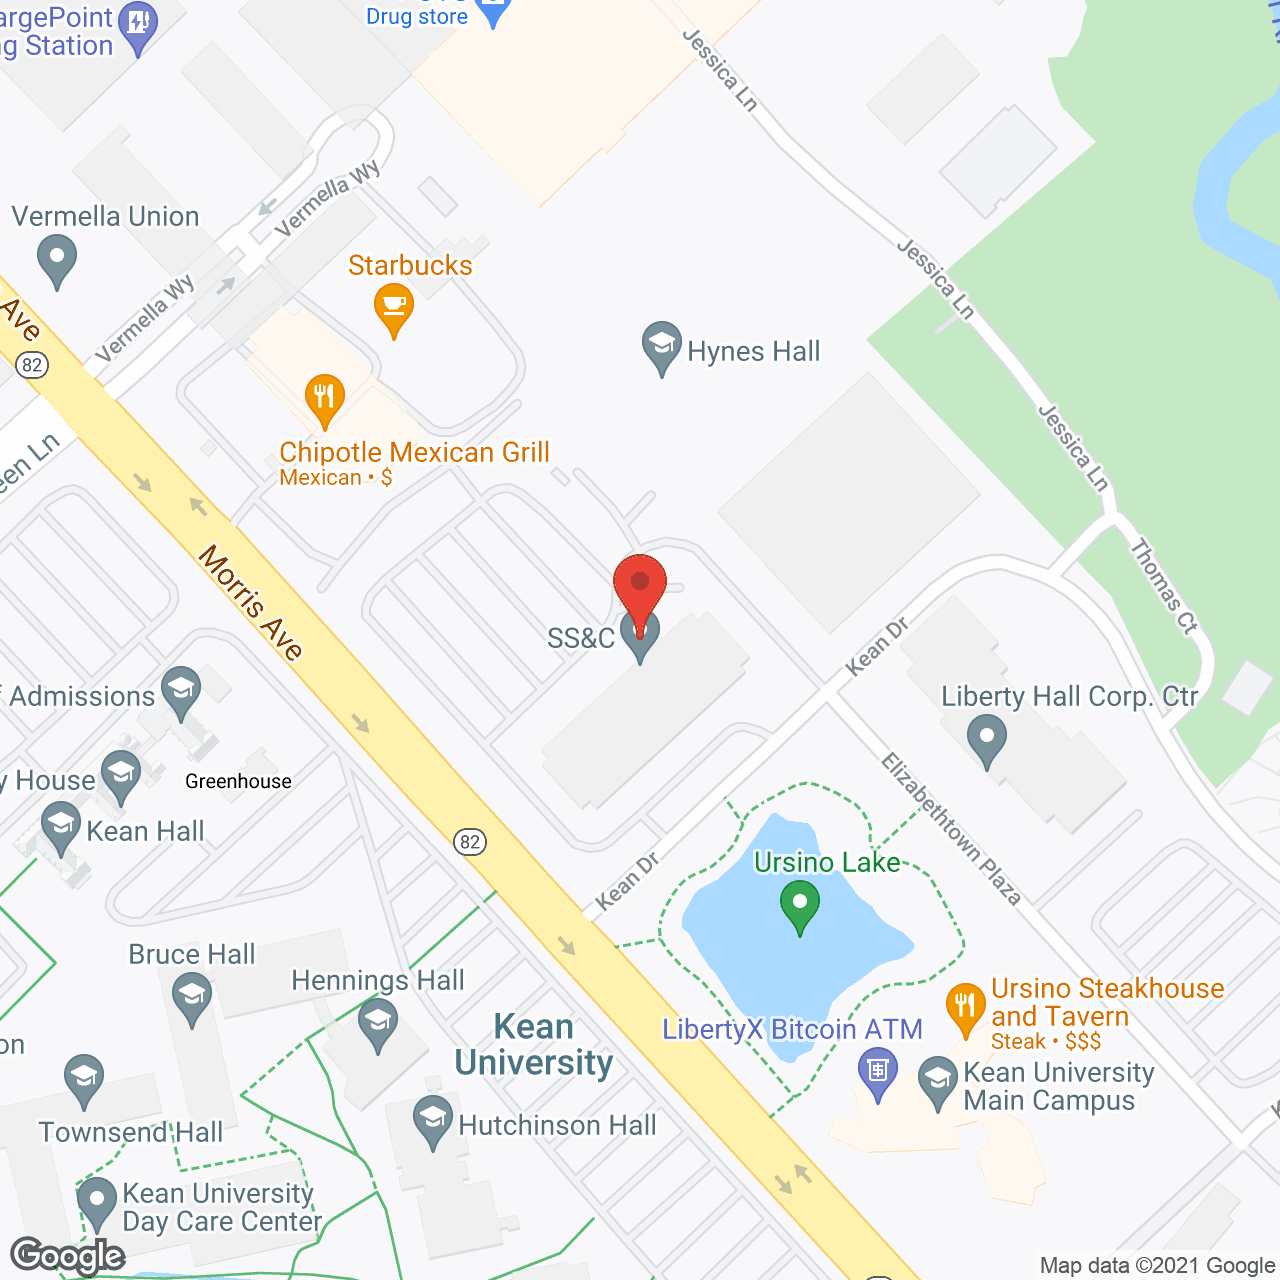 CareTen Inc. - Union, NJ in google map